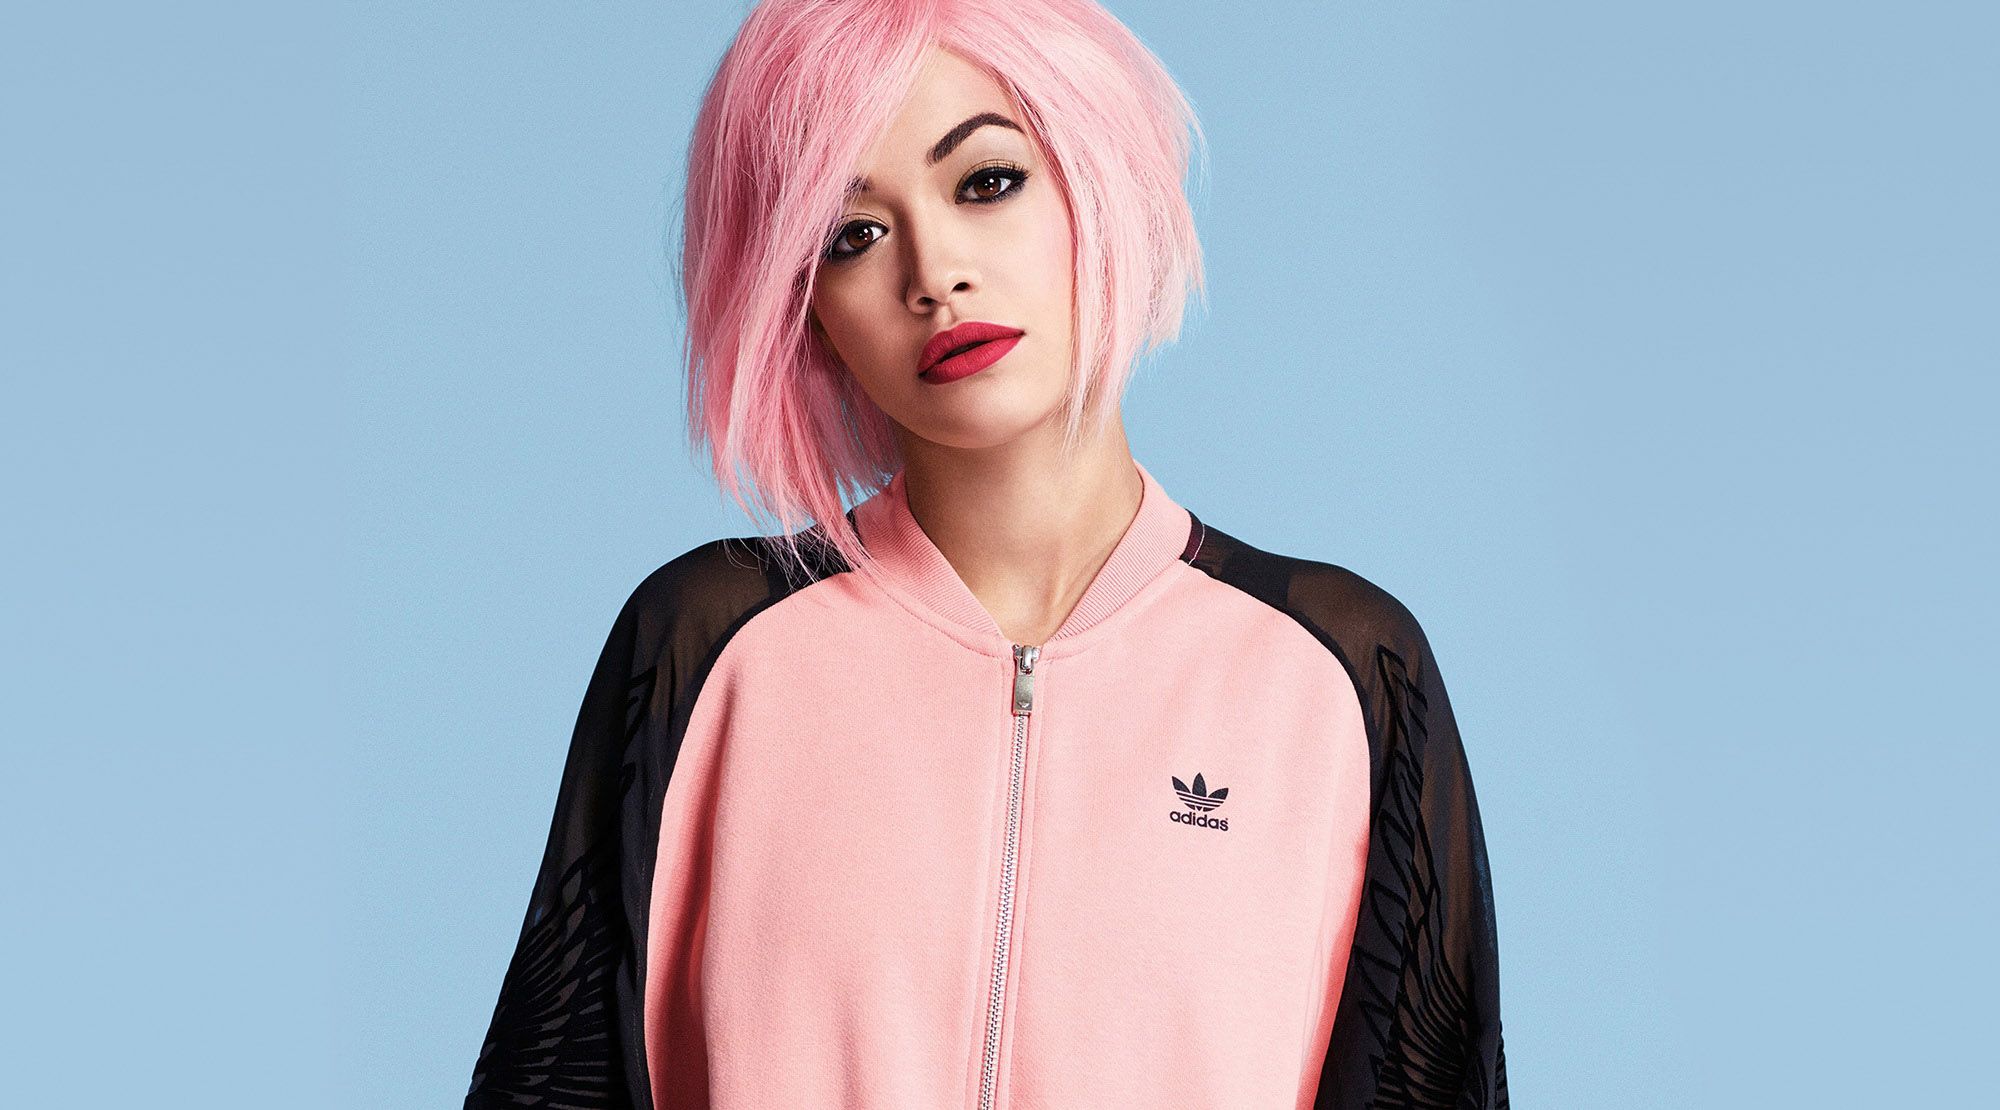 rita-ora-singer-music-adidas-pink-hair-autumn-trend-2014-730bb747bad7dfb6a3954e6cf0f238cf.jpg